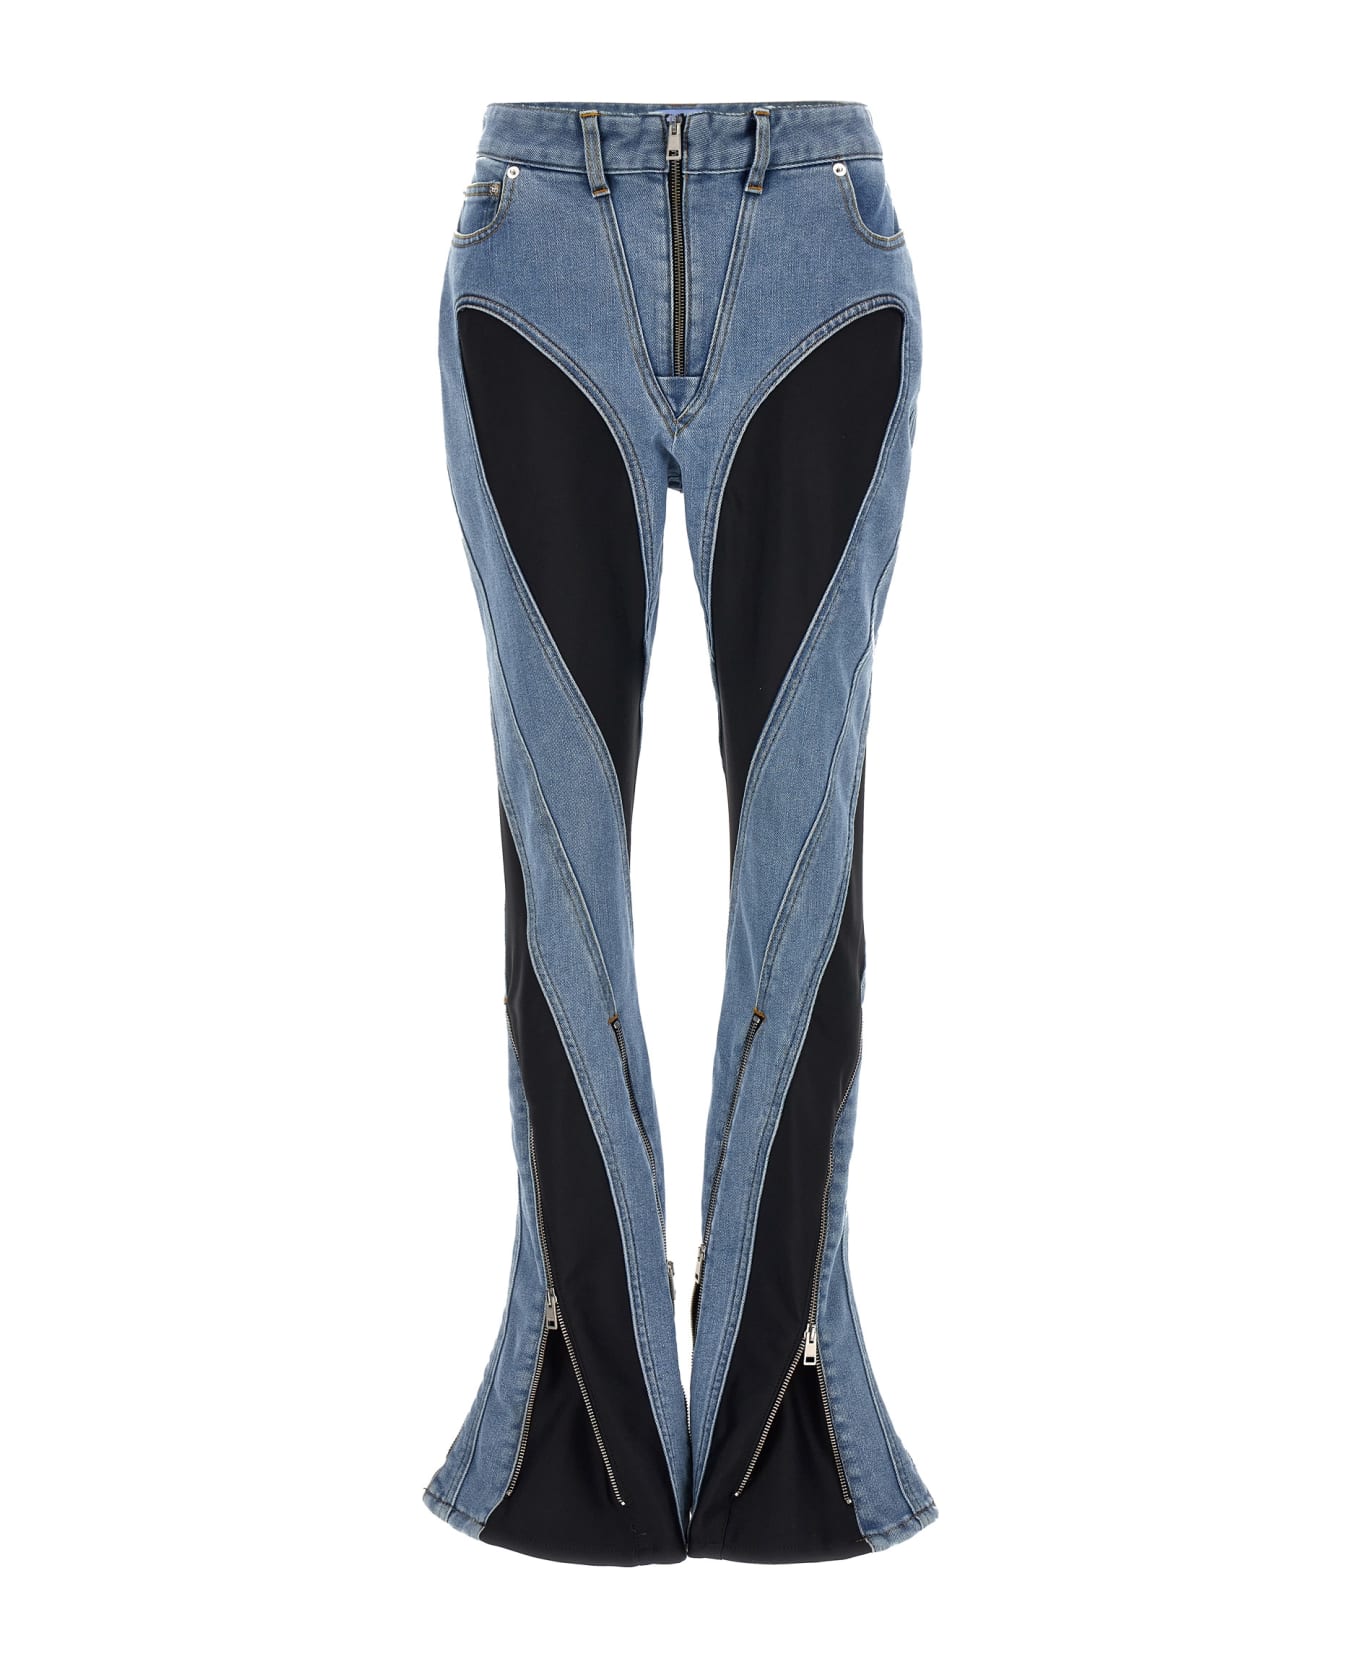 Mugler 'zipped Bi-material' Jeans - Multicolor